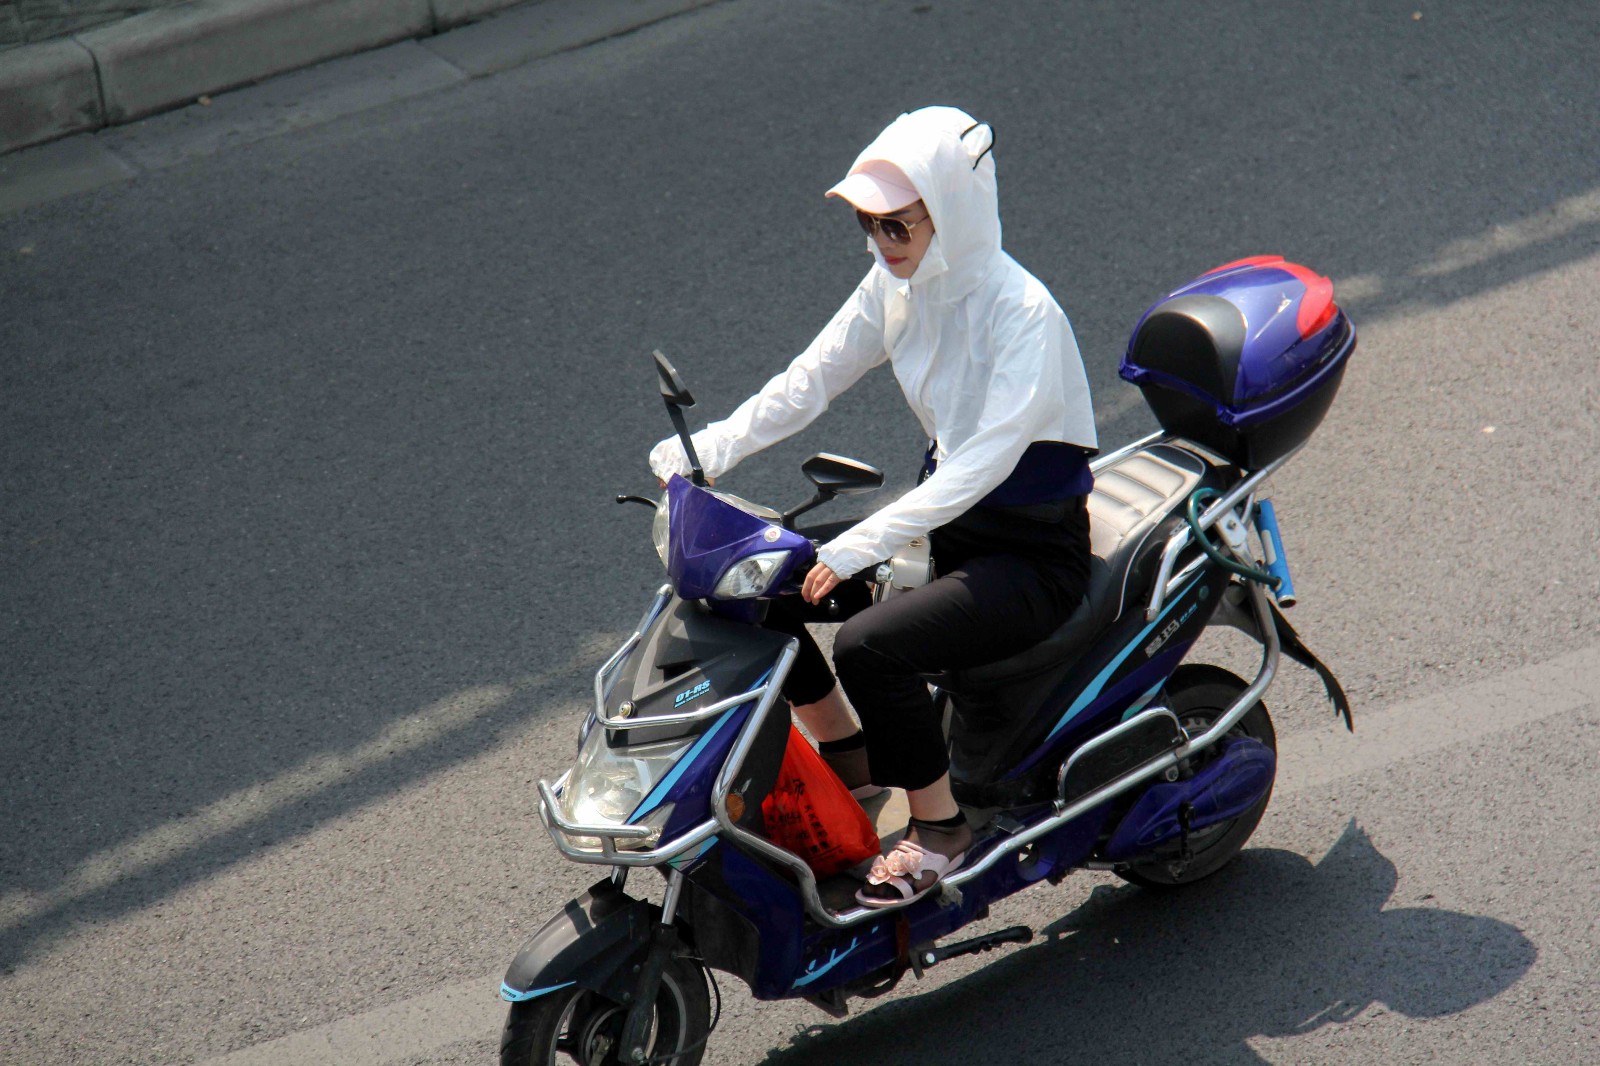 安徽芜湖,高温来袭,室外温度突破35度以上,烈阳下,一位骑电动车的女子